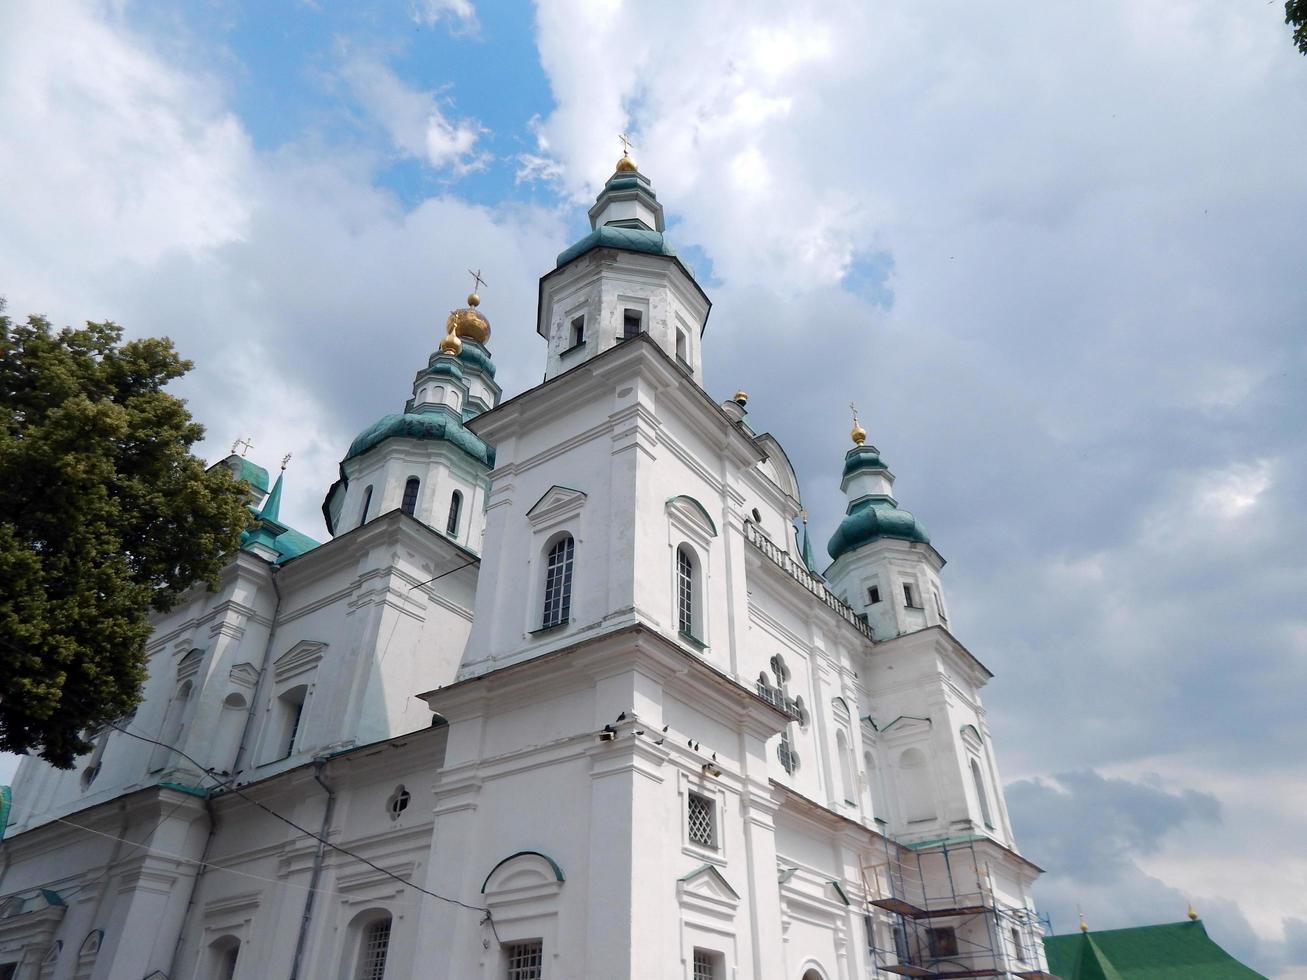 mittelalterliche architektur des ukrainischen barocks in chernigov foto